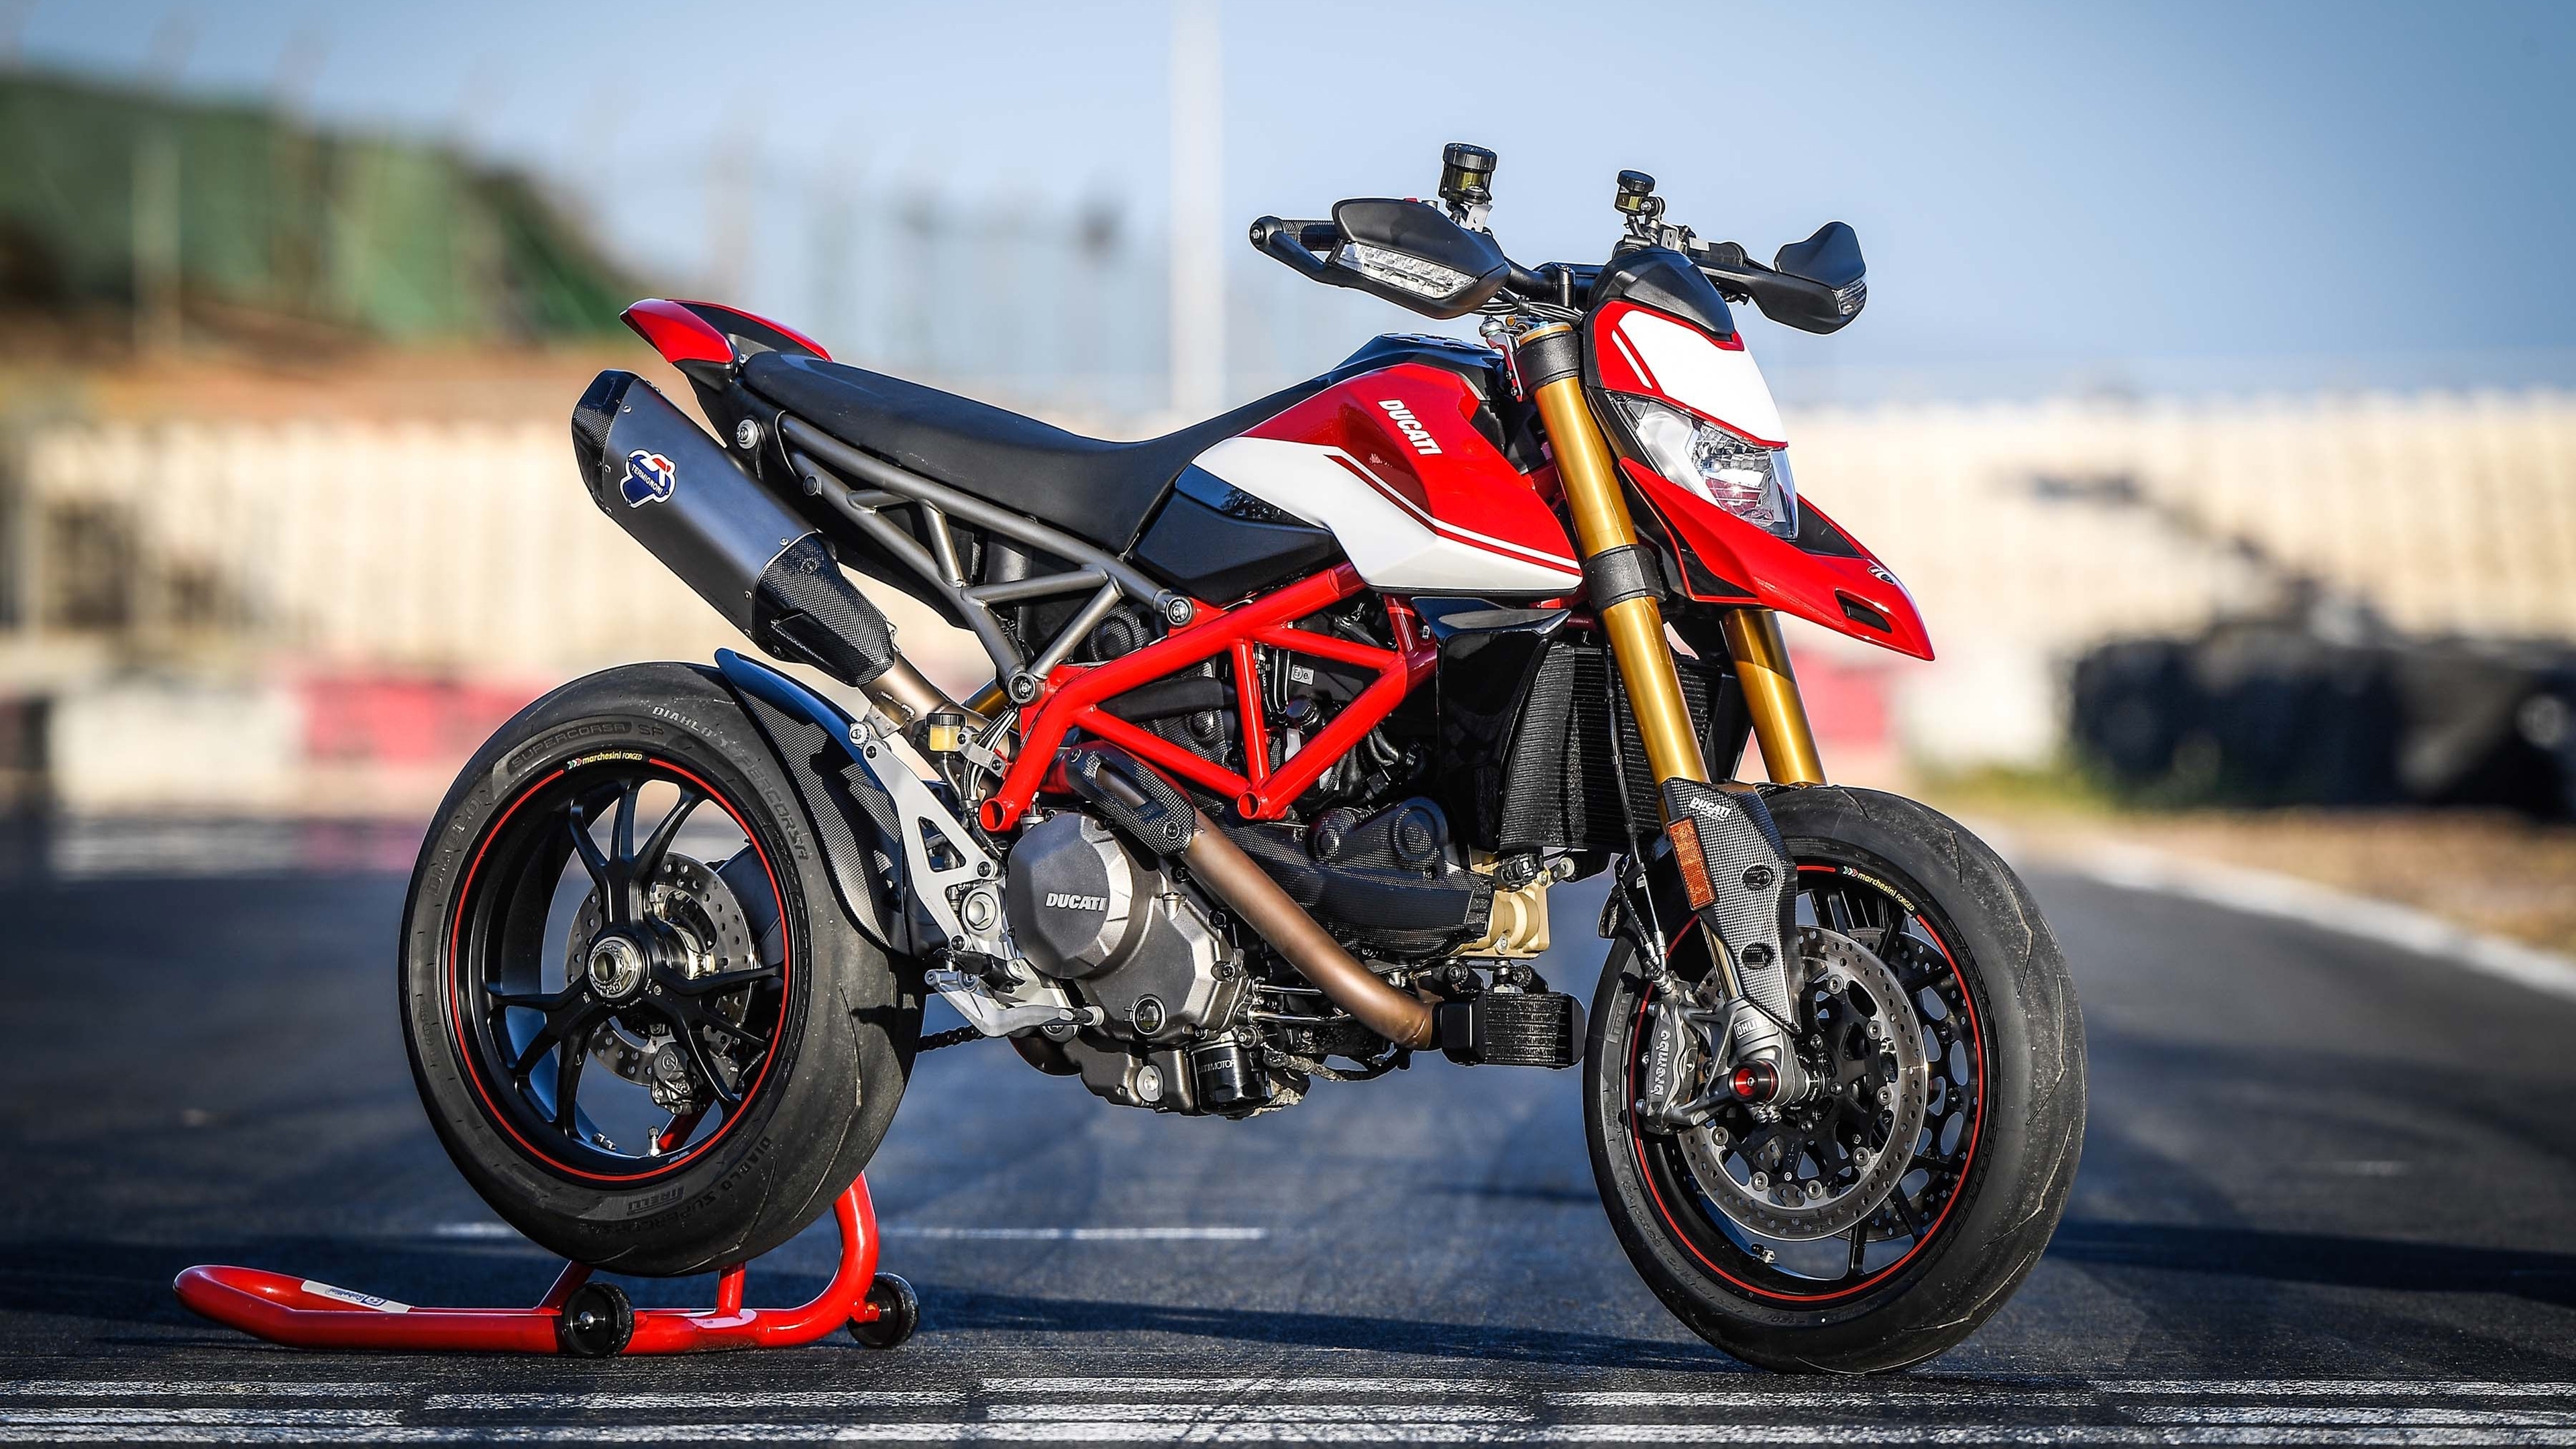 2019 Ducati Hypermotard 950 SP 4K